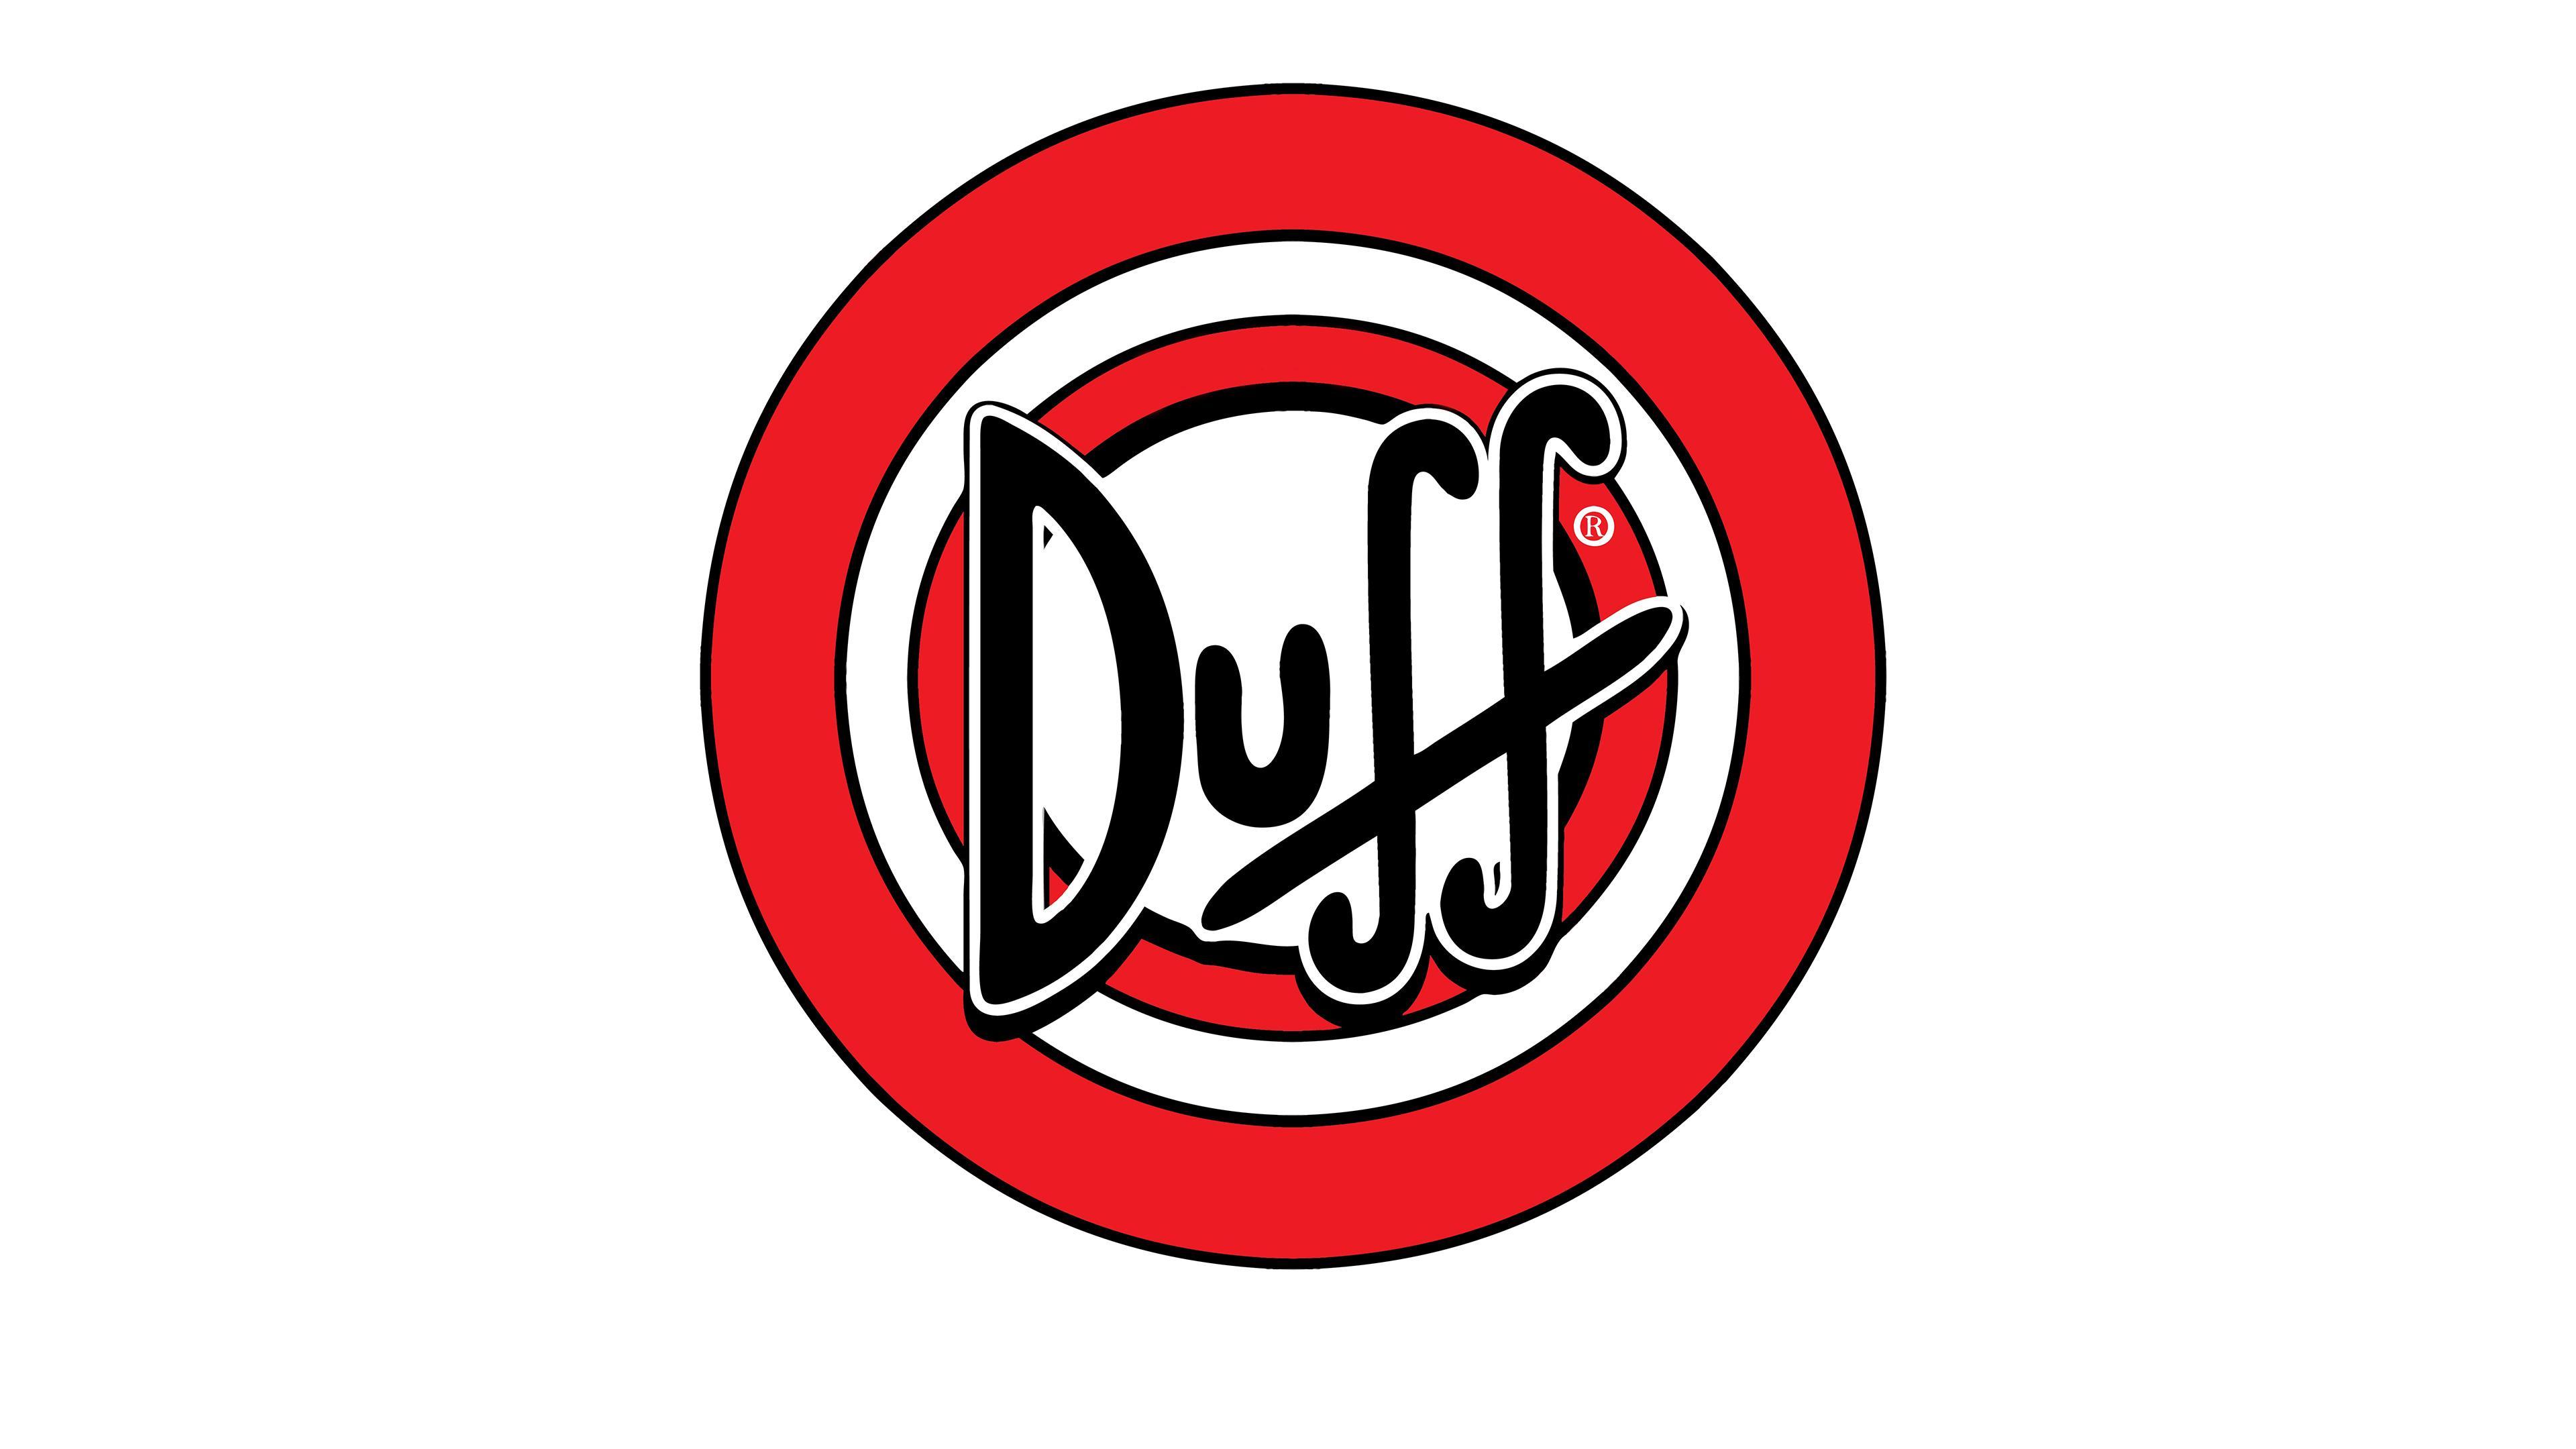 Duff beer logo HD desktop wallpaper, Widescreen, High